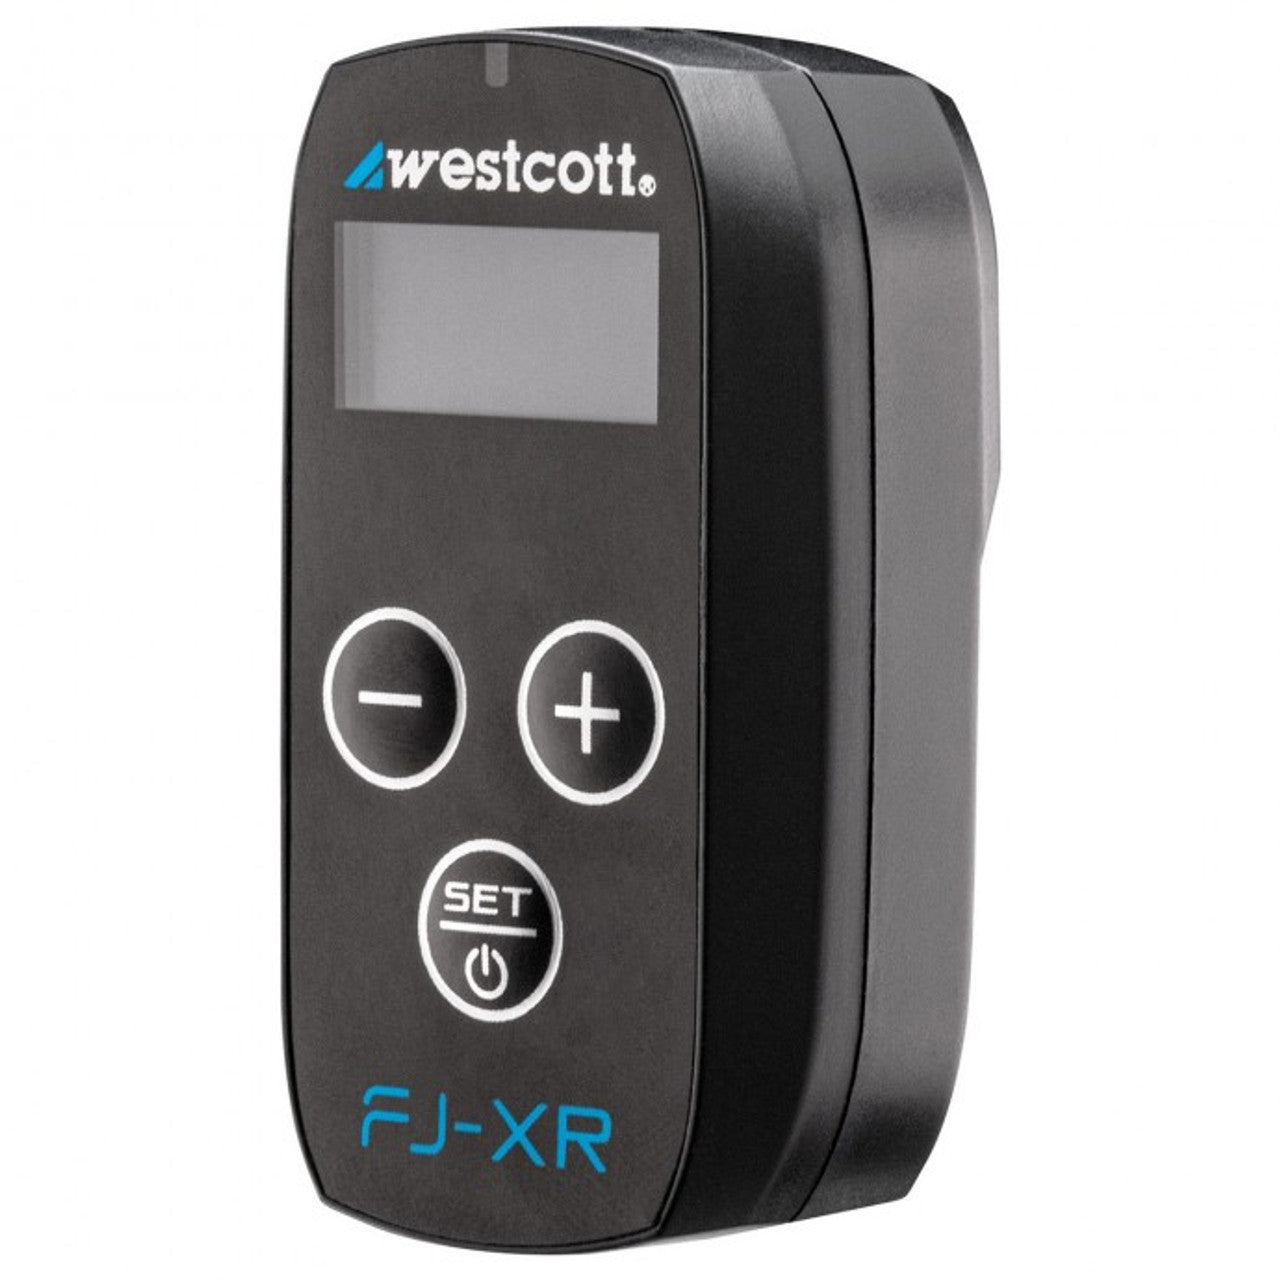 Westcott FJ-XR Wireless Receiver